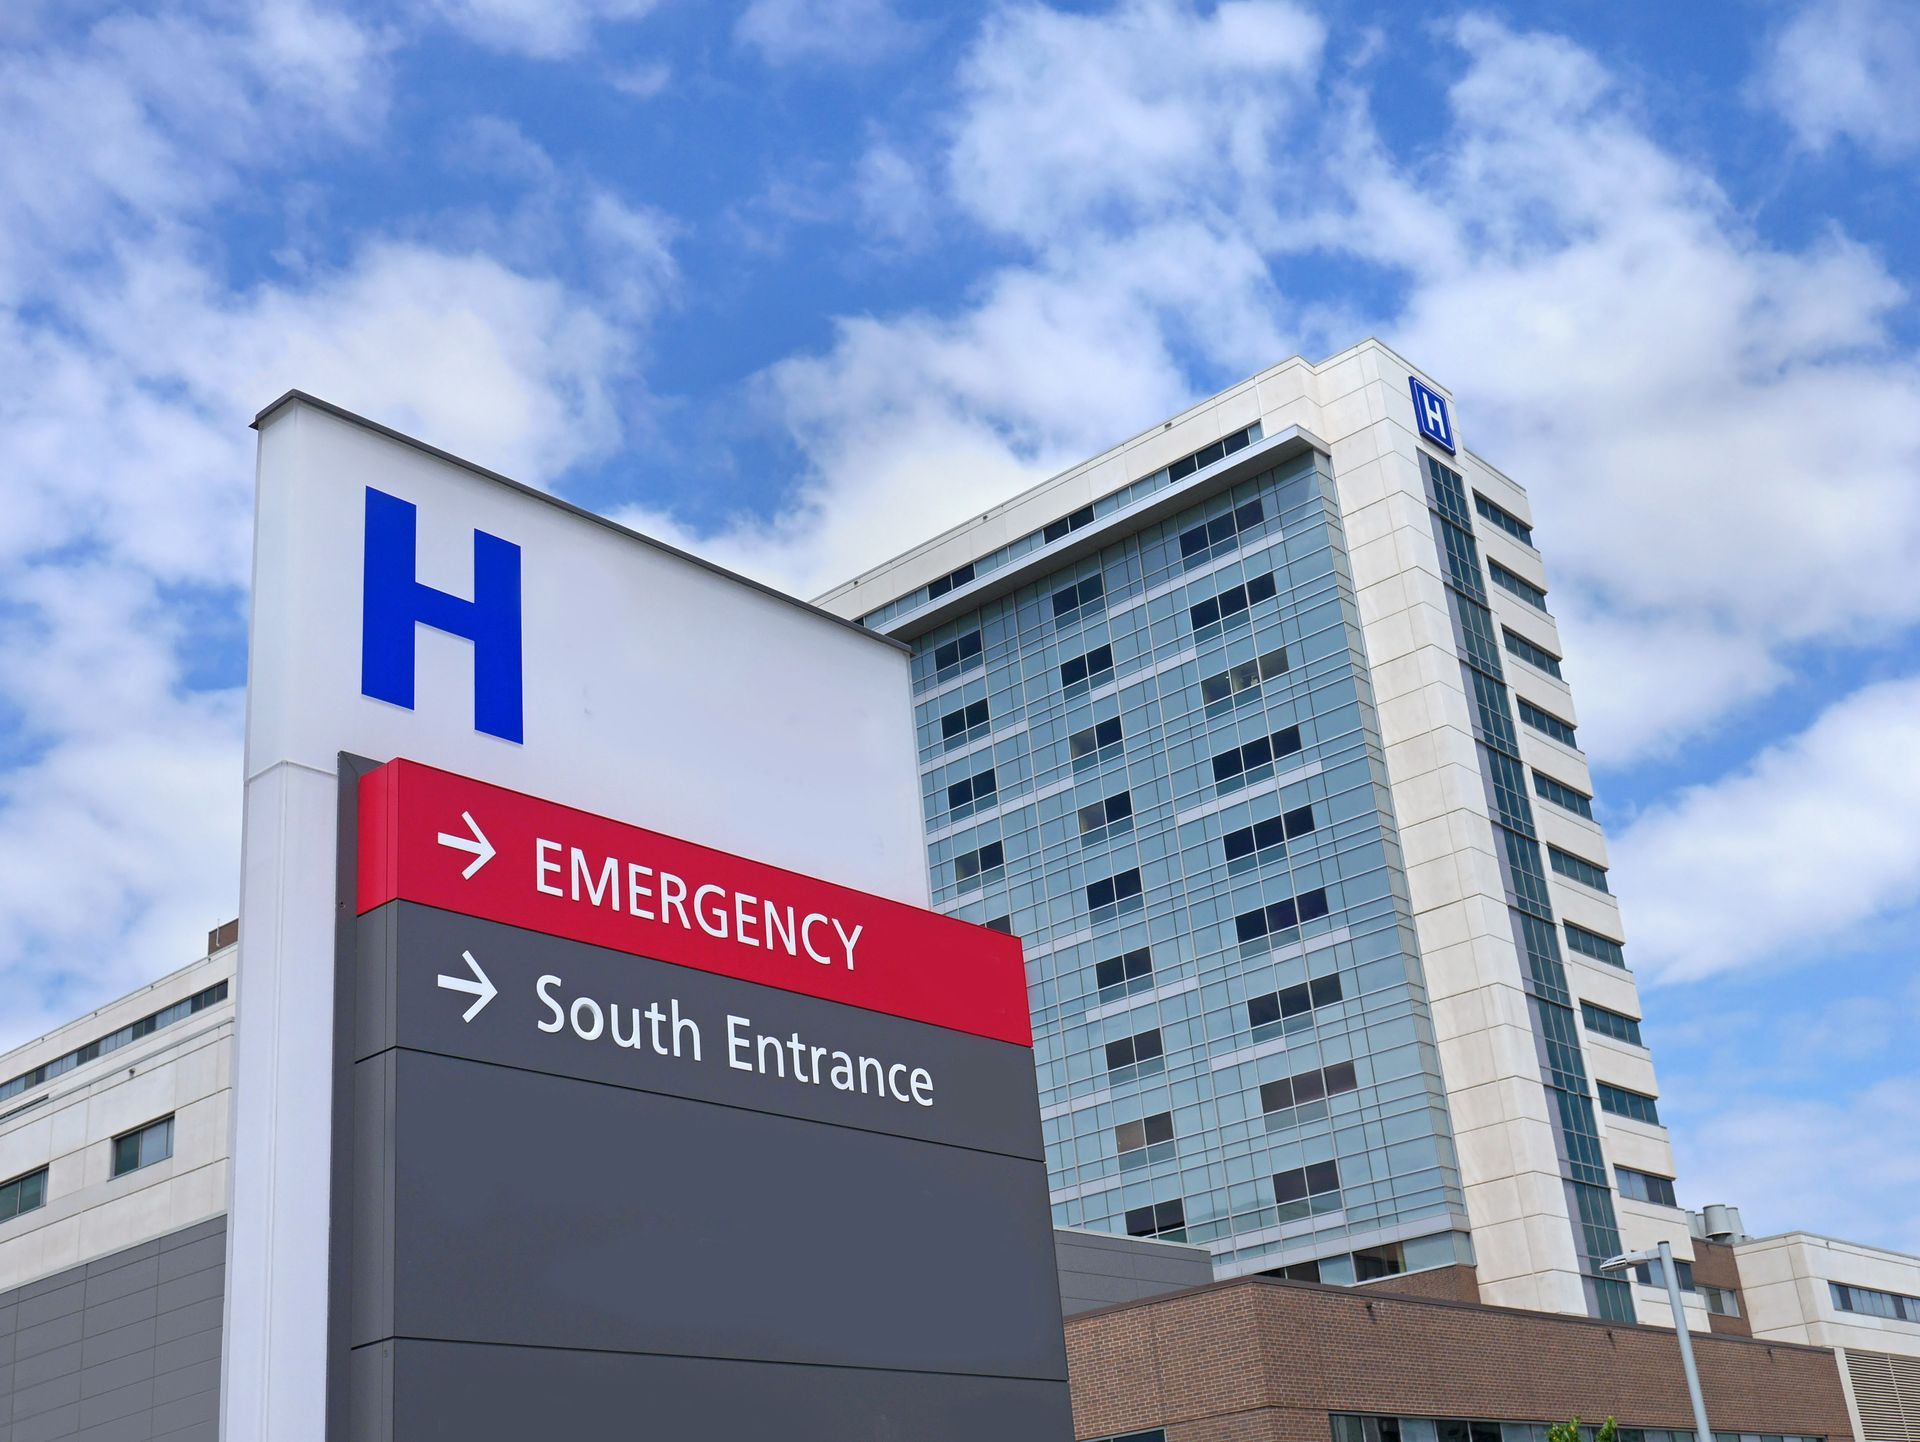 Panneaux indicatifs d'un hôpital